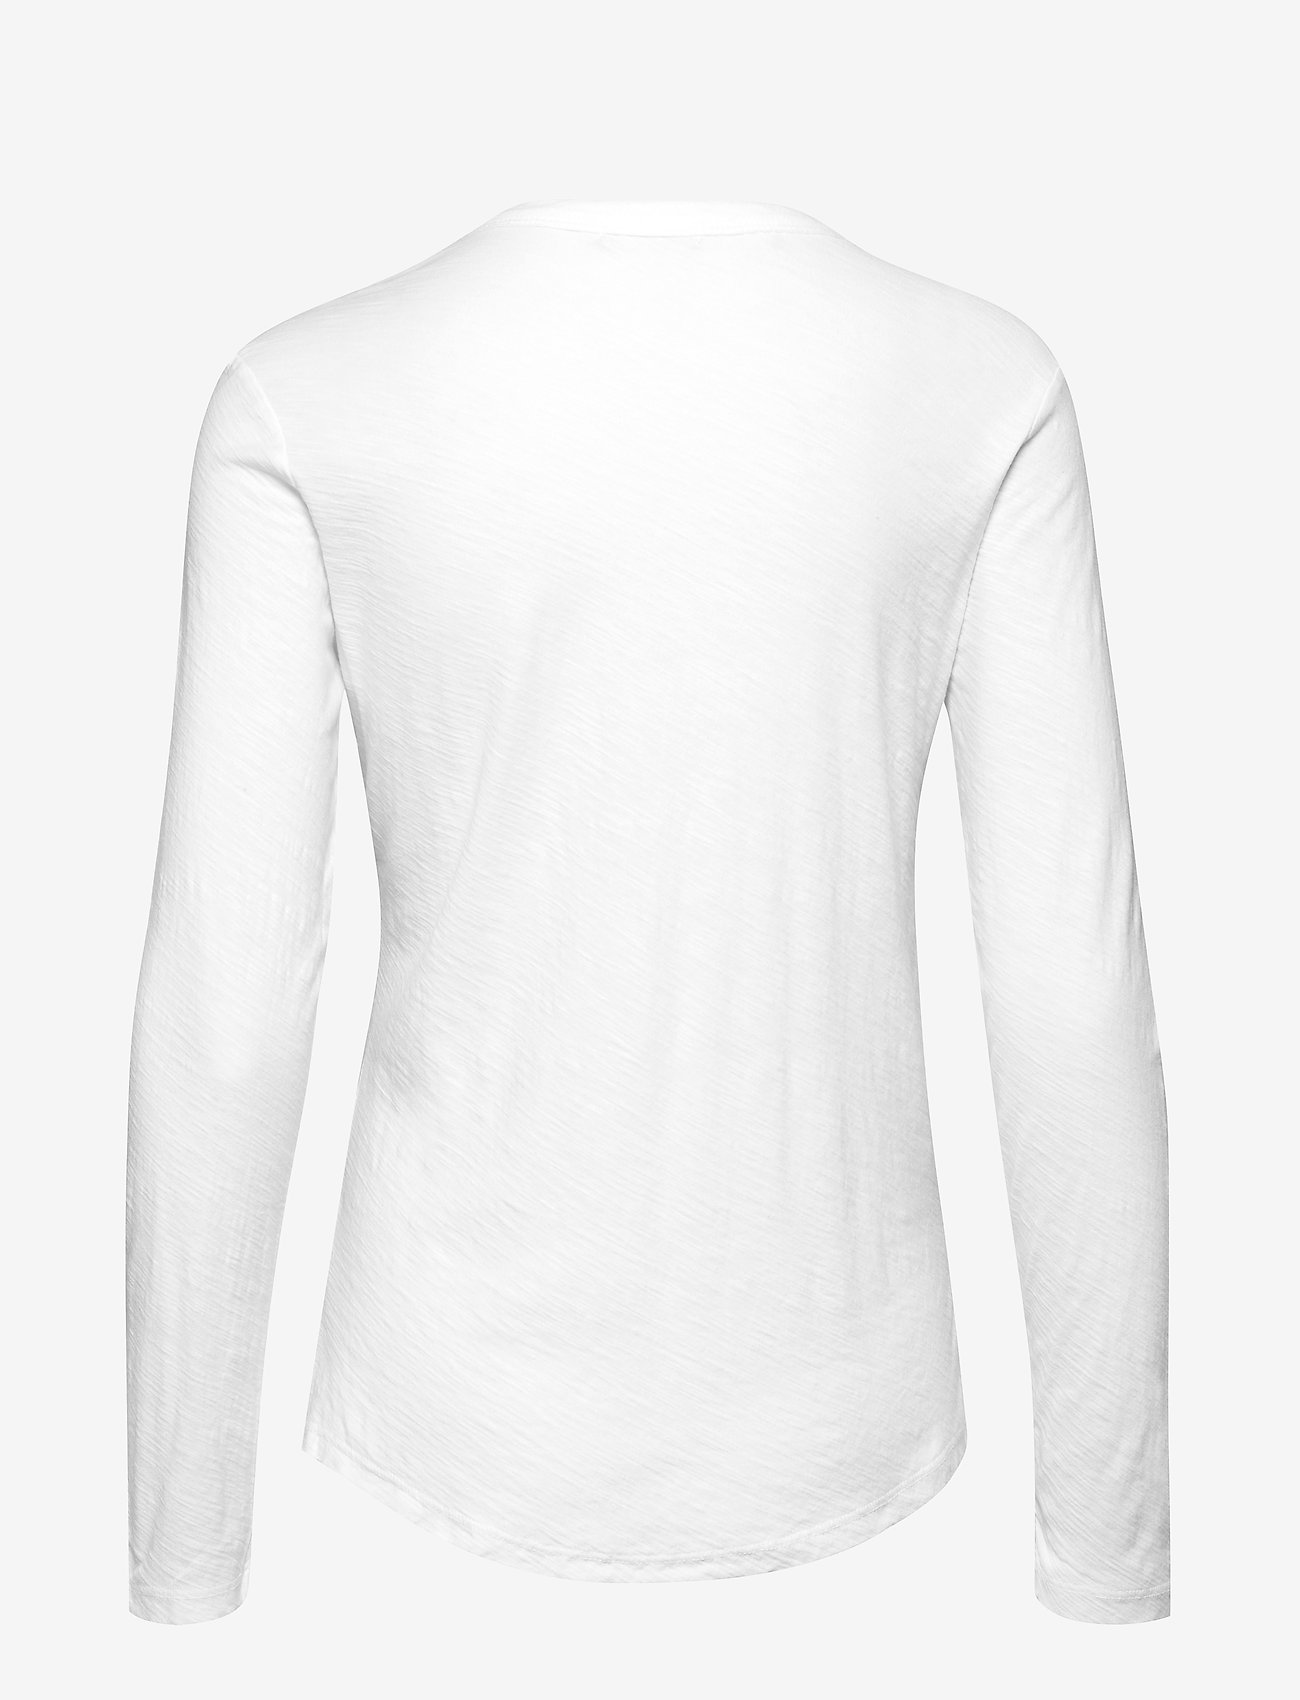 Levete Room - LR-ANY - long-sleeved tops - l100 - white - 1